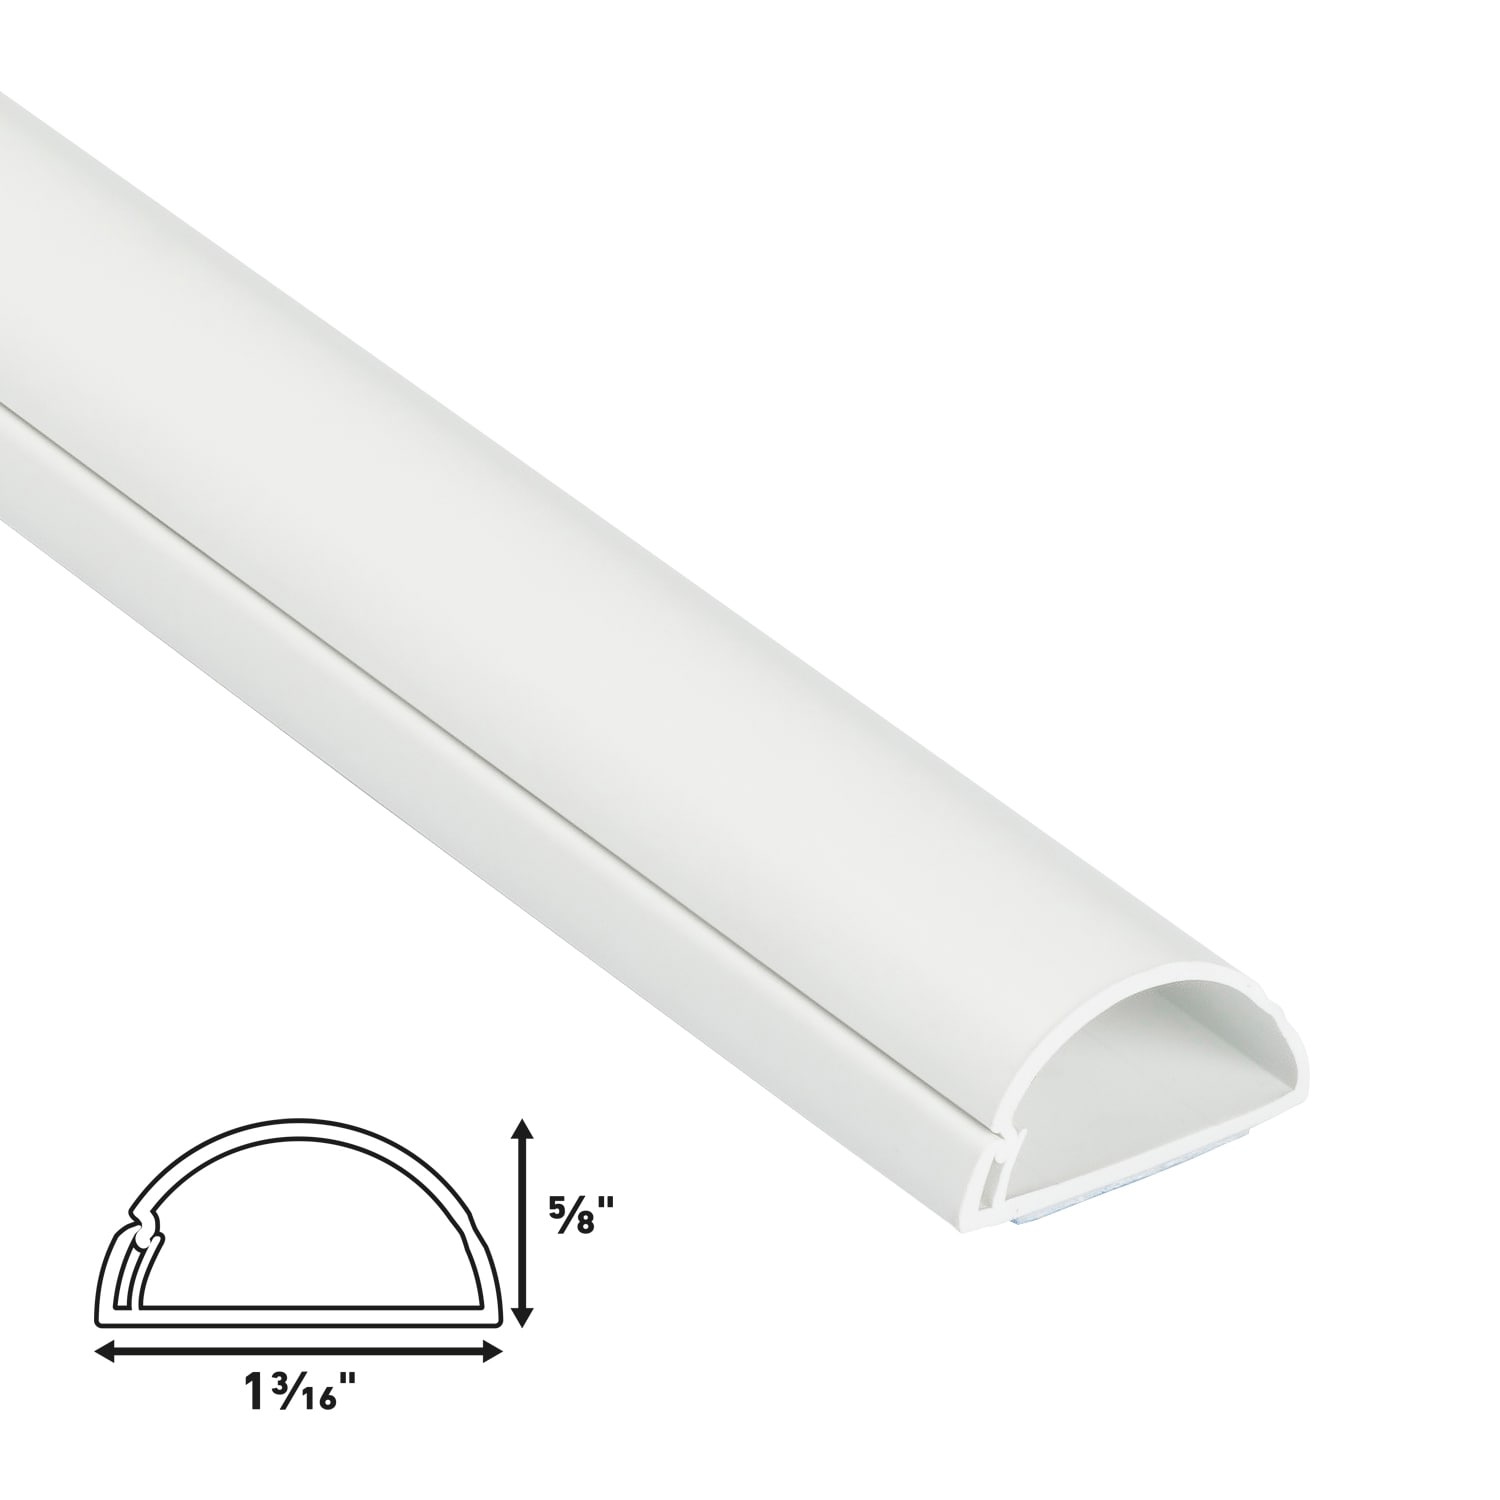 DeLOCK thin self-adhesive plastic cable cover, white